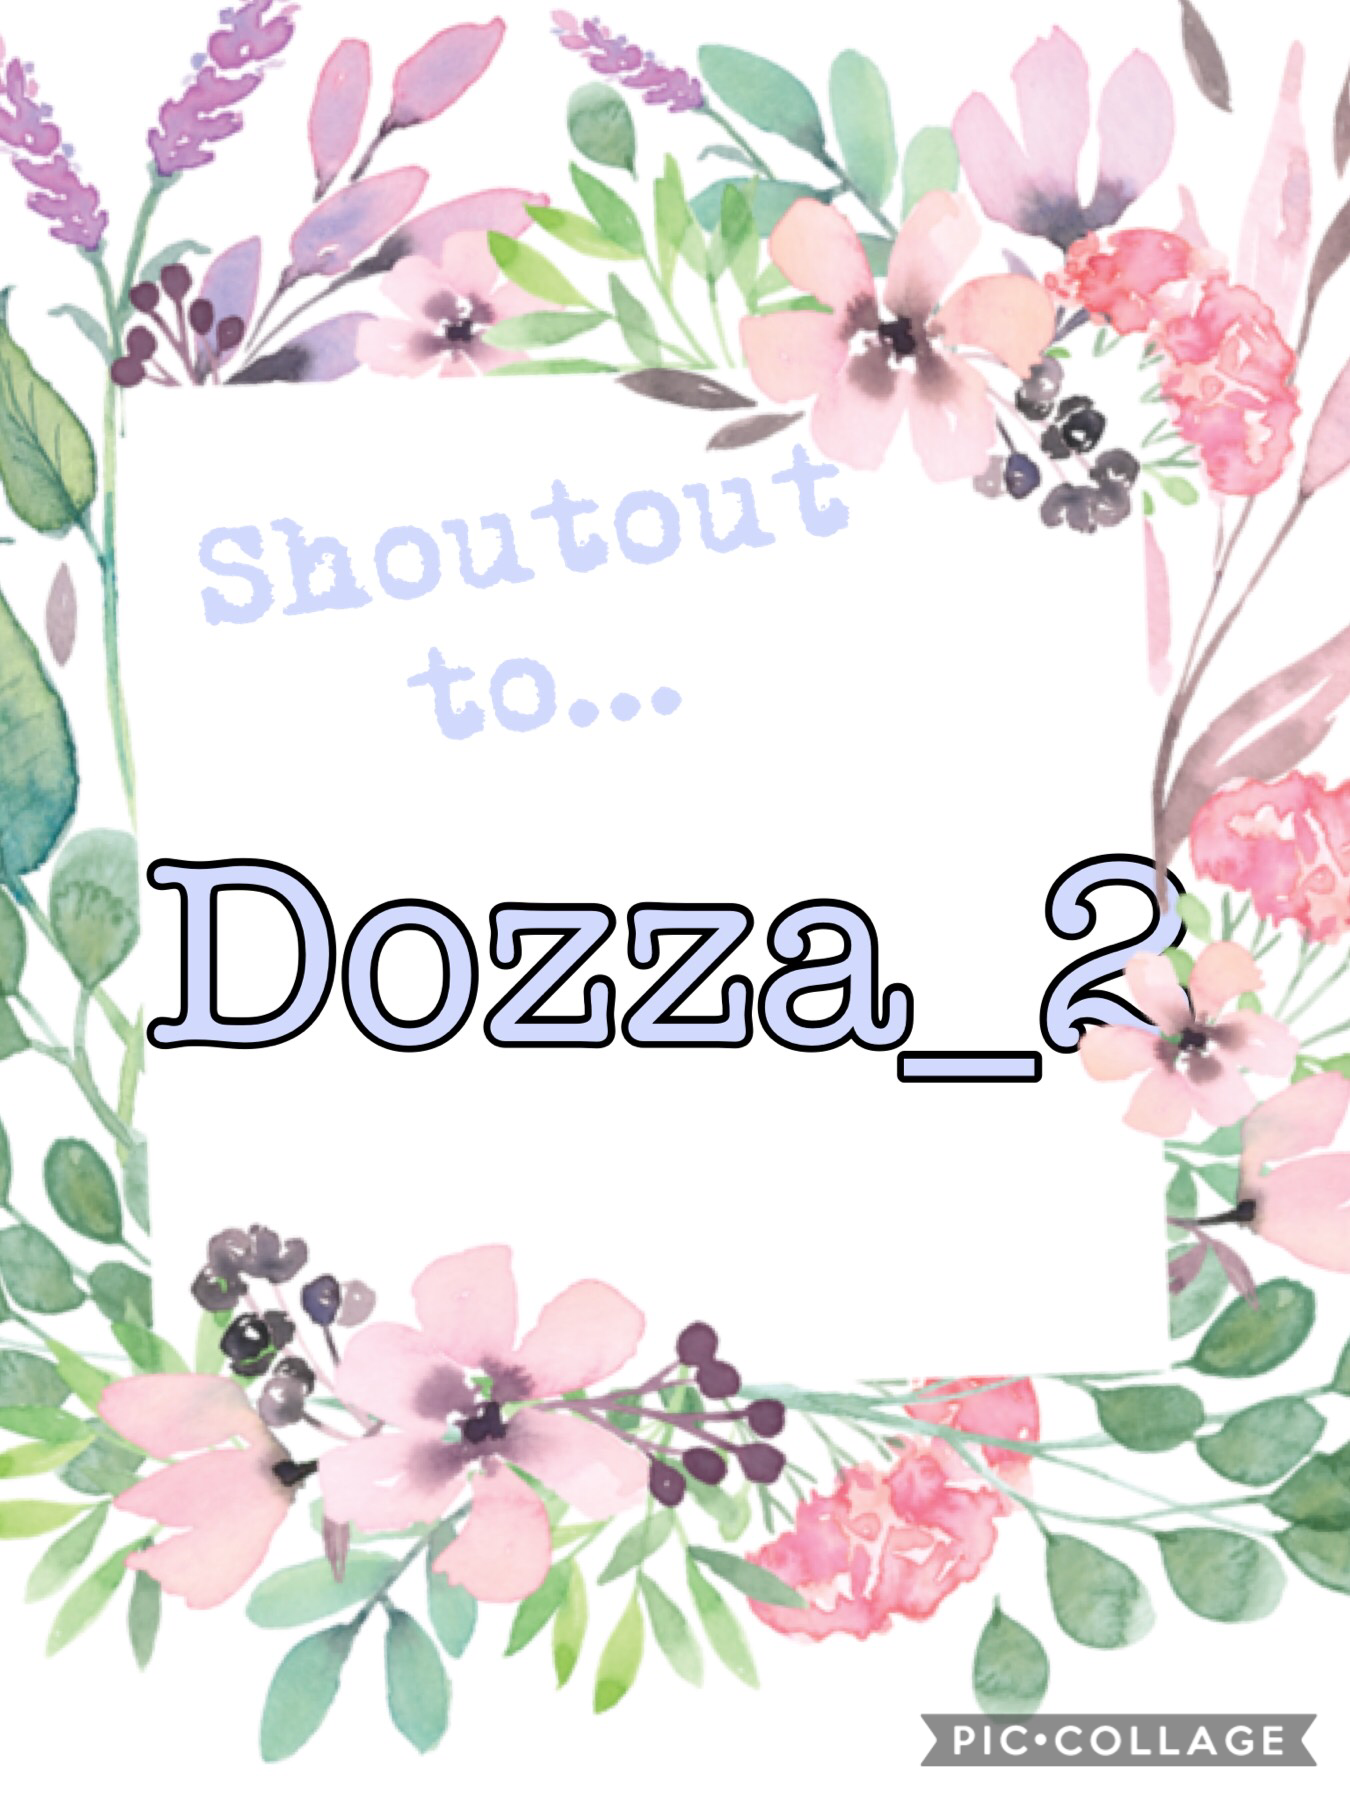 Shoutout to Dozza!